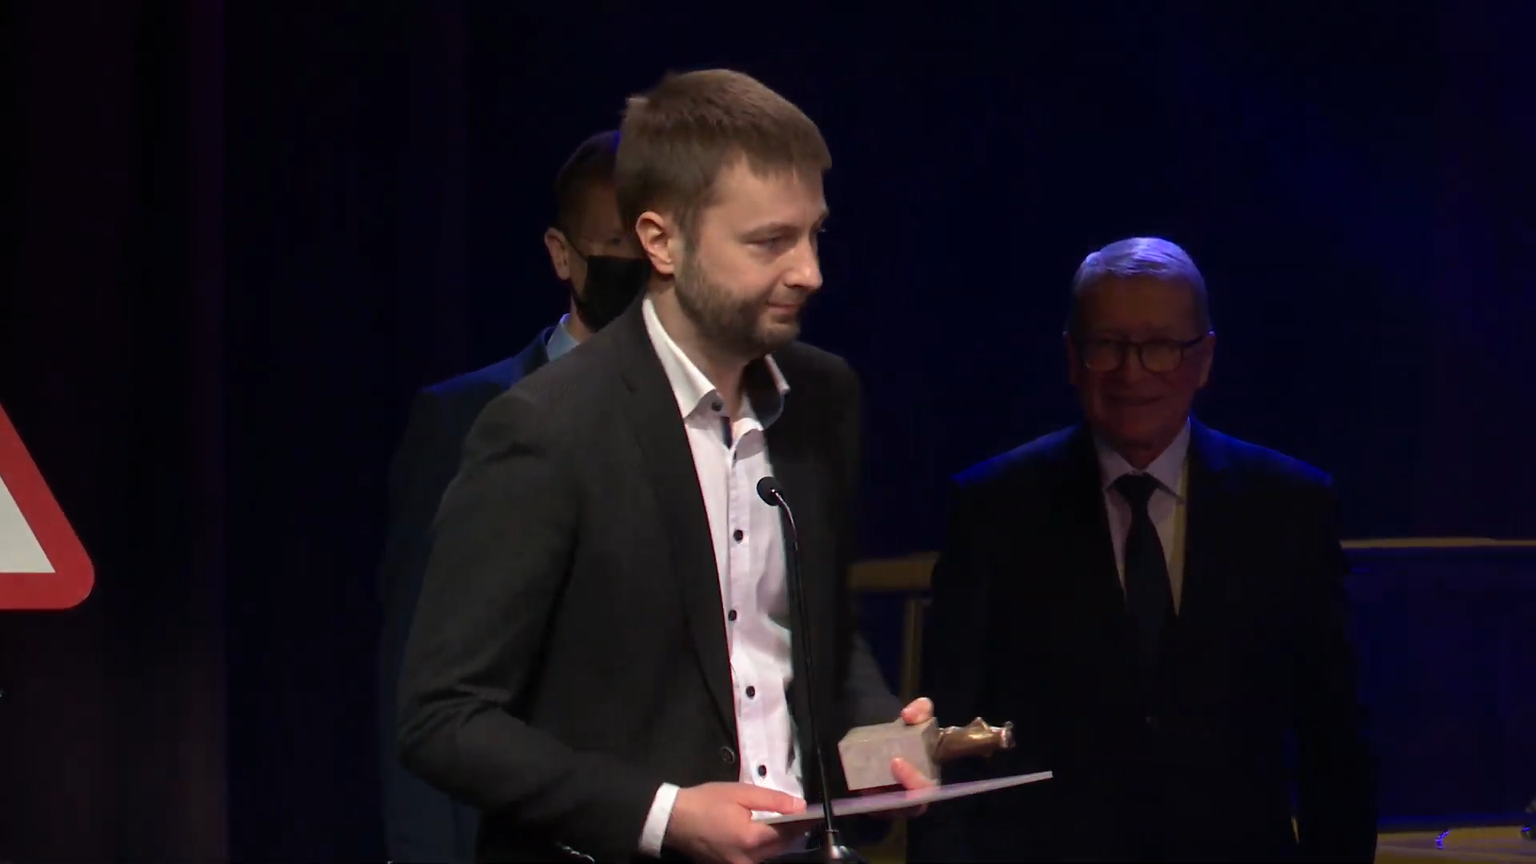 Eesti spordi- ja olümpiamuuseum sai galal auhinna aasta muuseumikogu arendajana, Muuseumiroti võttis vastu muuseumi juhatuse liige Siim Randoja.